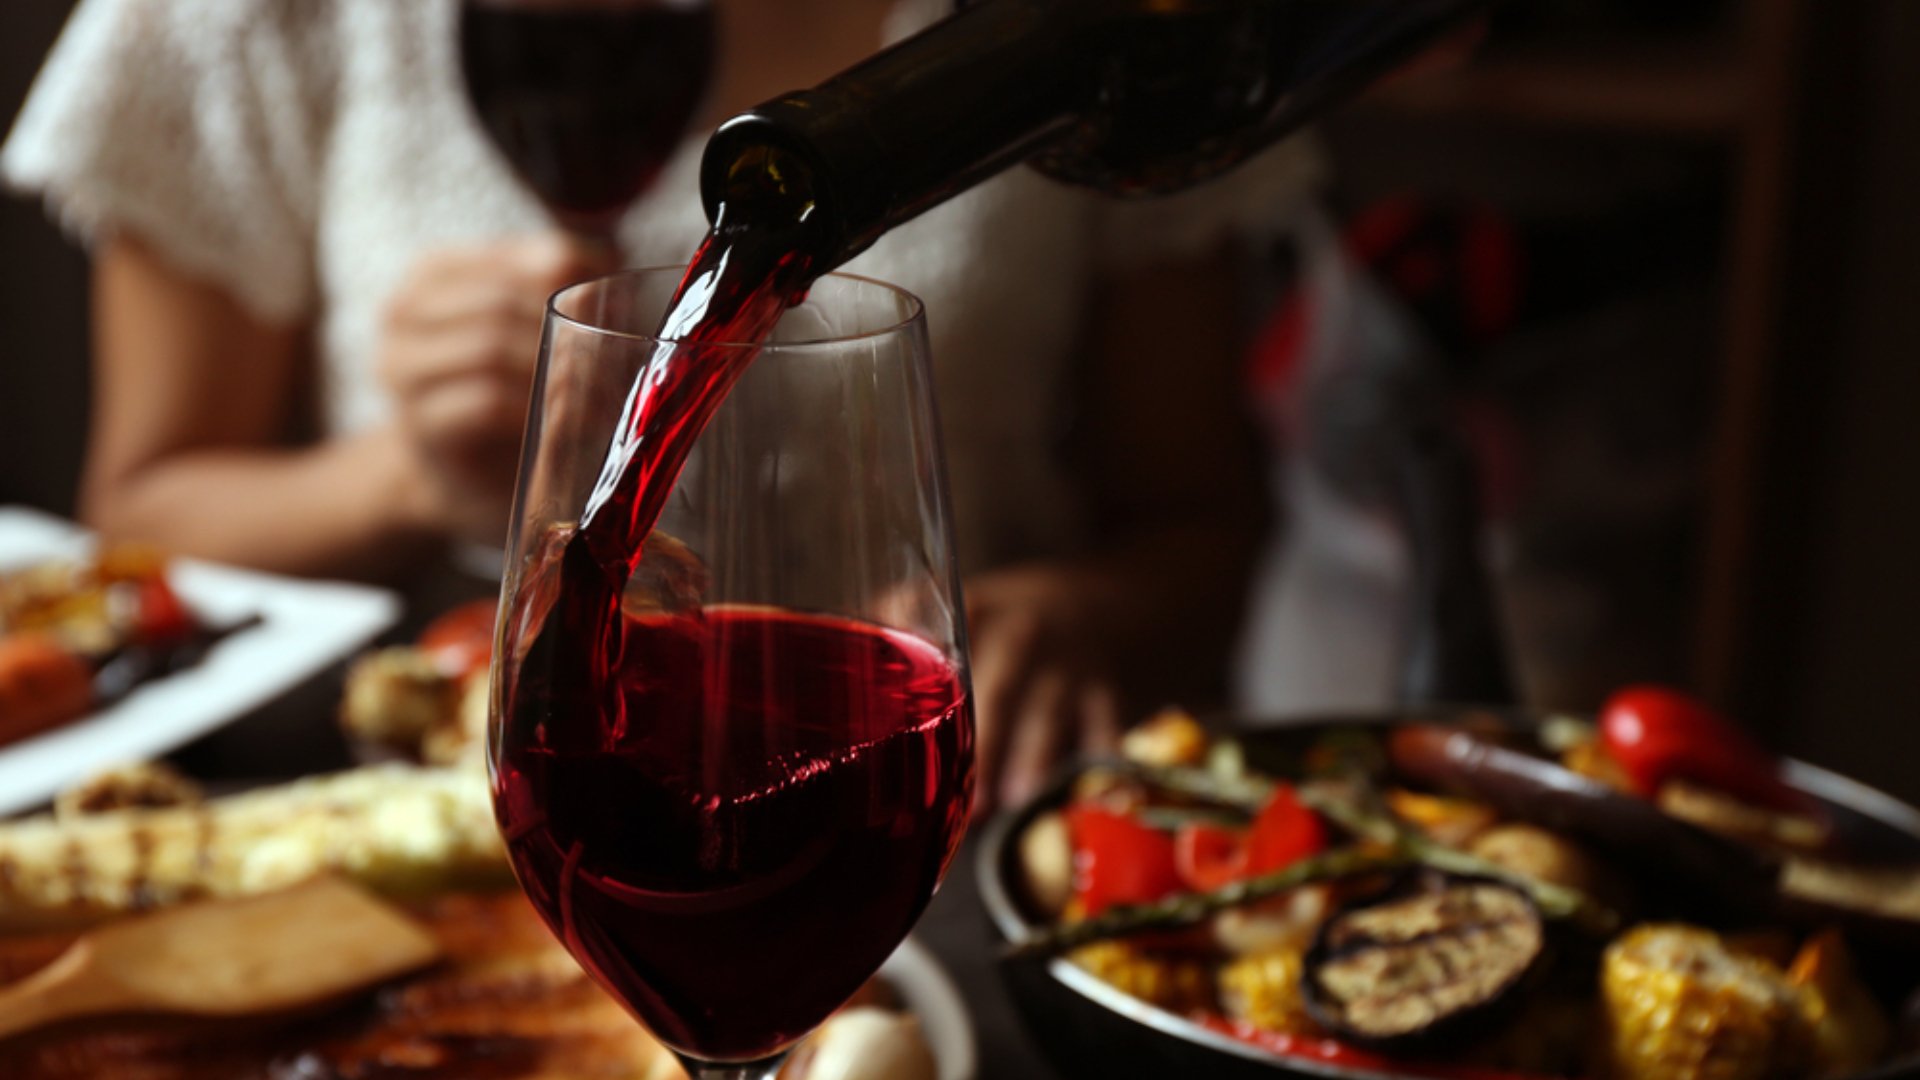 A bor pozitív hatásai - mértékkel fogyasztva orvosság!